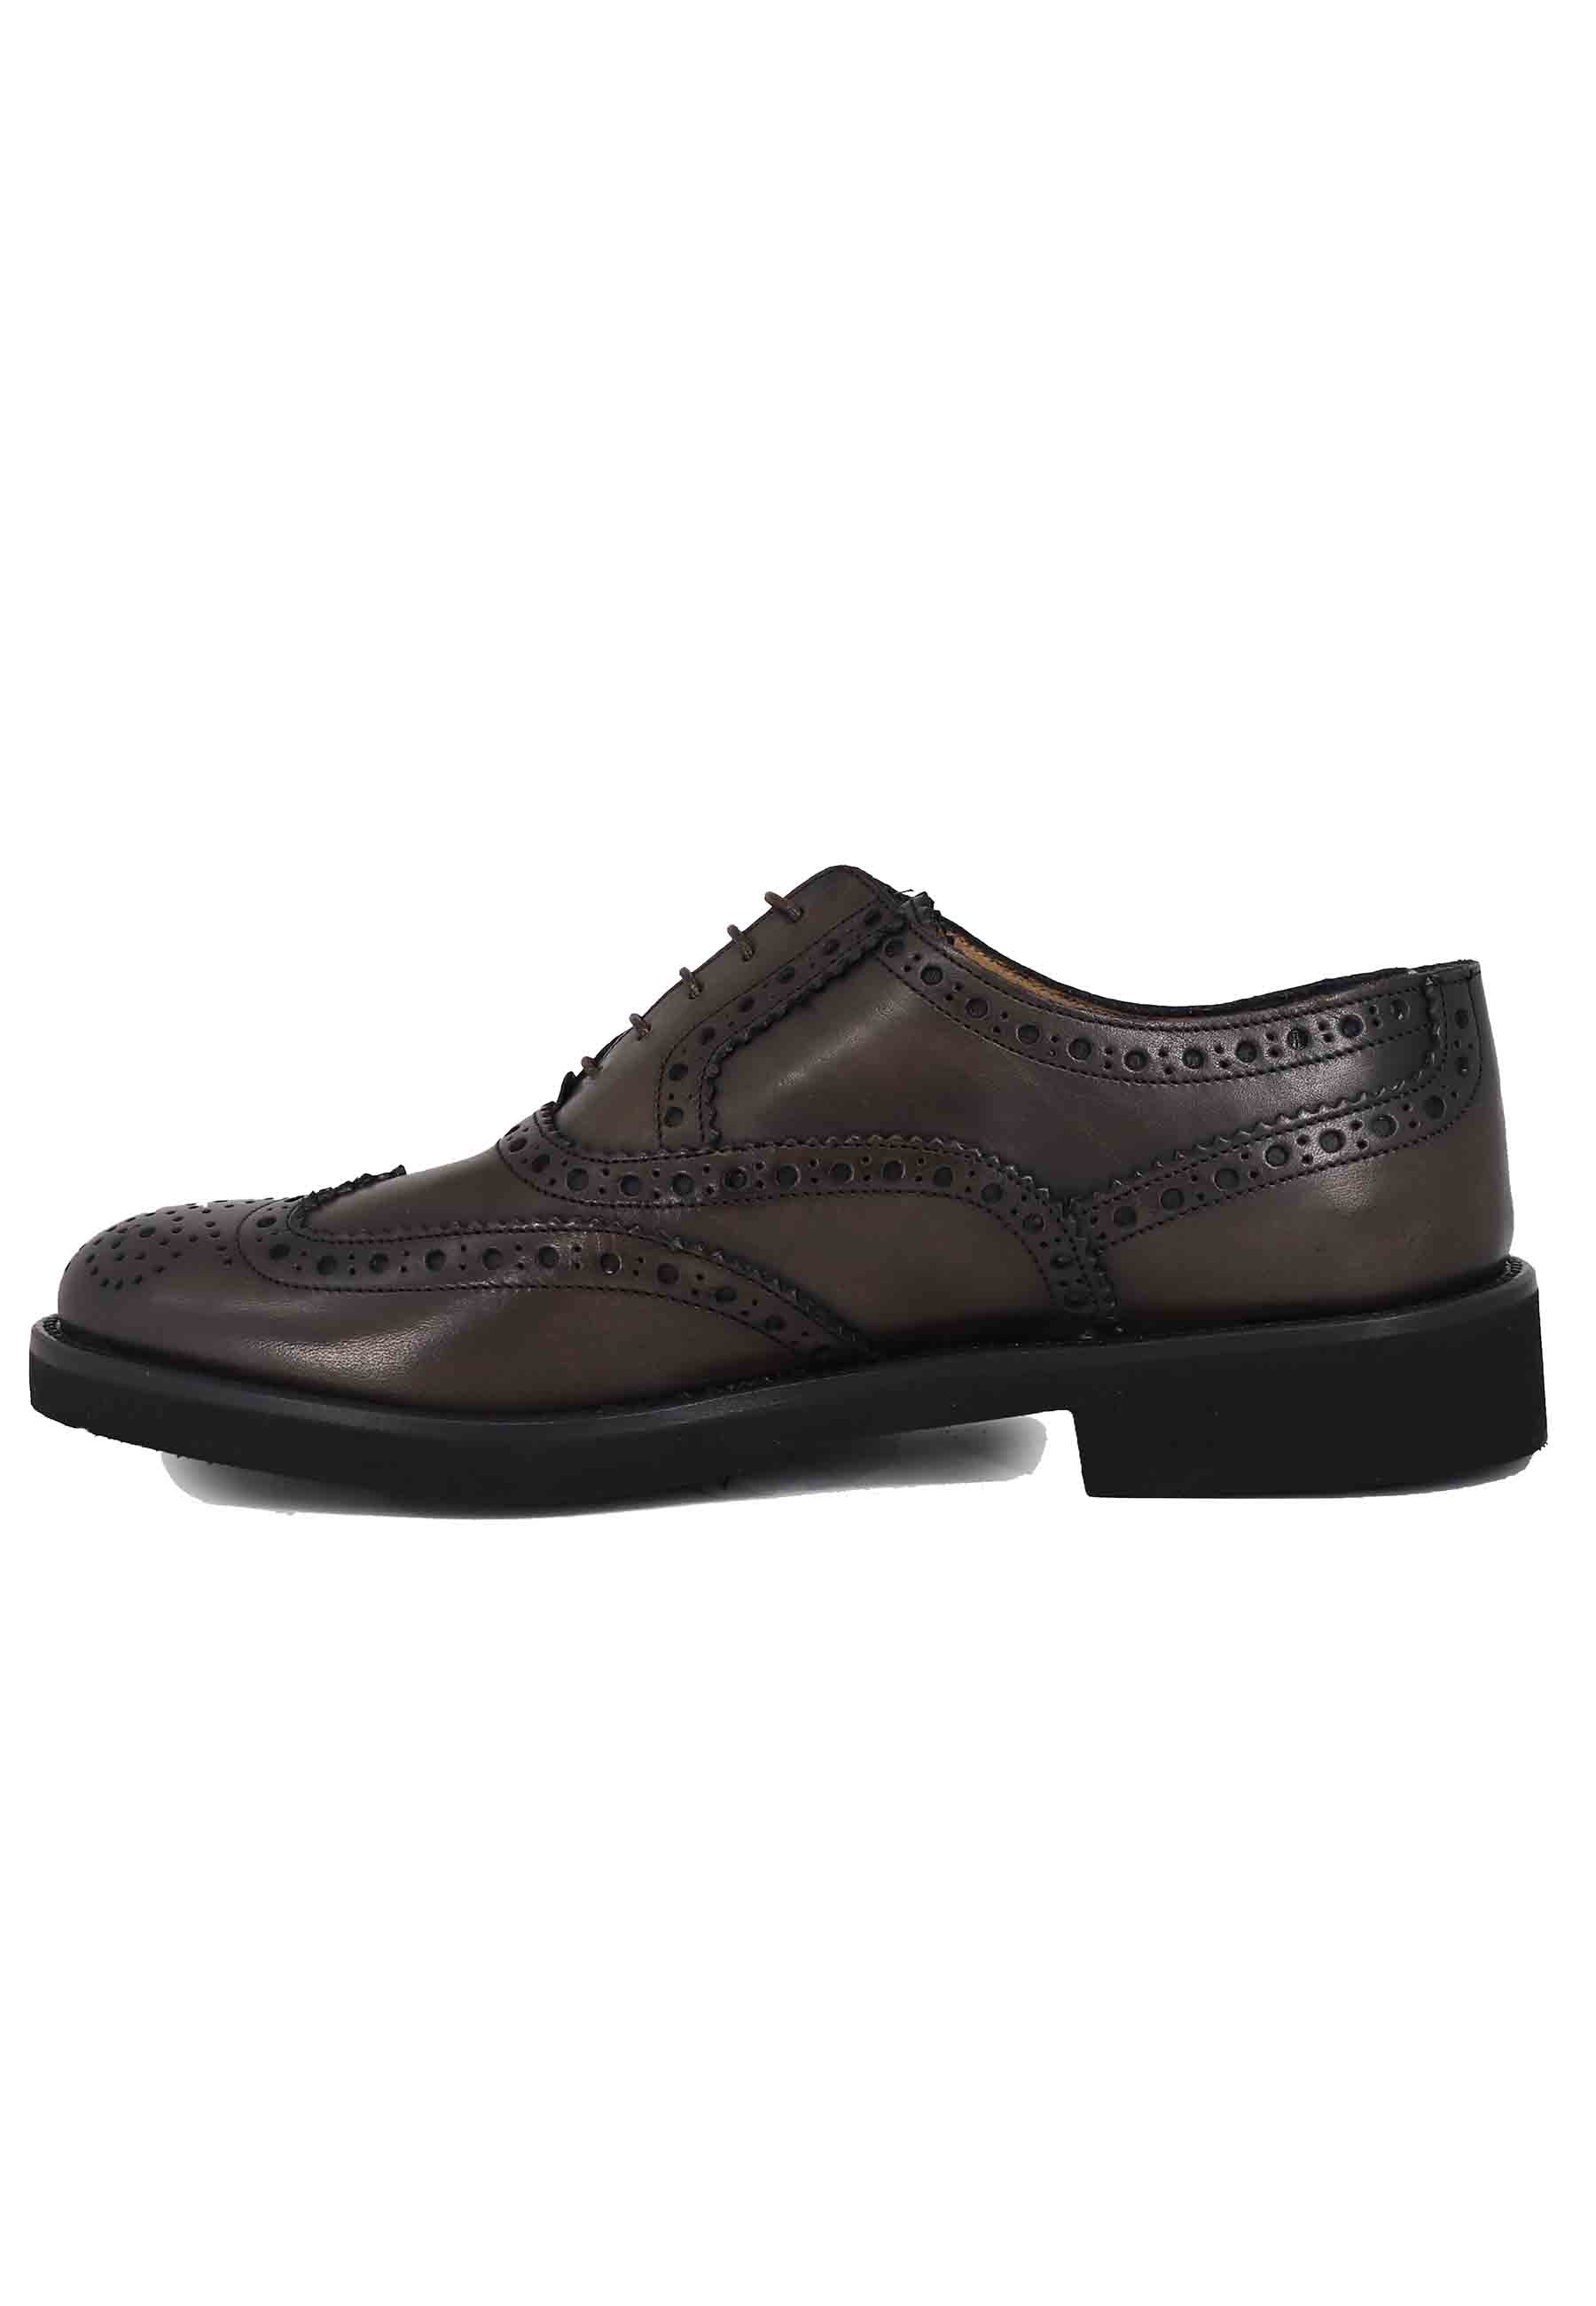 Chaussures à lacets pour hommes en cuir marron foncé avec surpiqûres anglaises et semelle en caoutchouc ultra légère